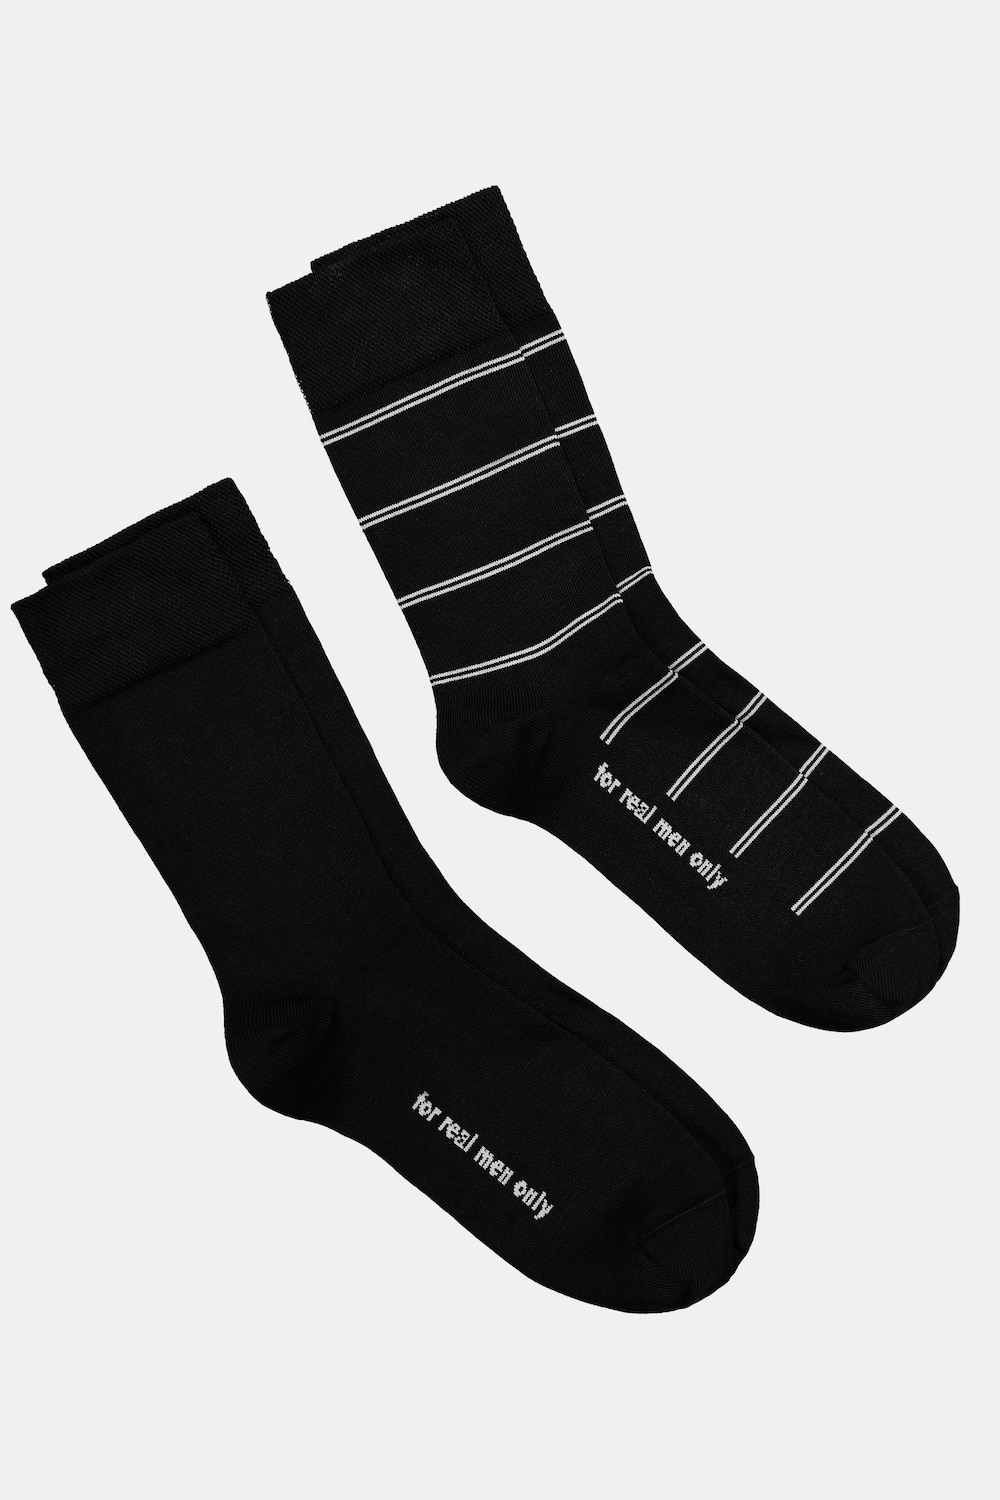 Große Größen JP1880 Socken, Herren, schwarz, Größe: 39-42, Baumwolle/Synthetische Fasern, JP1880 von JP1880